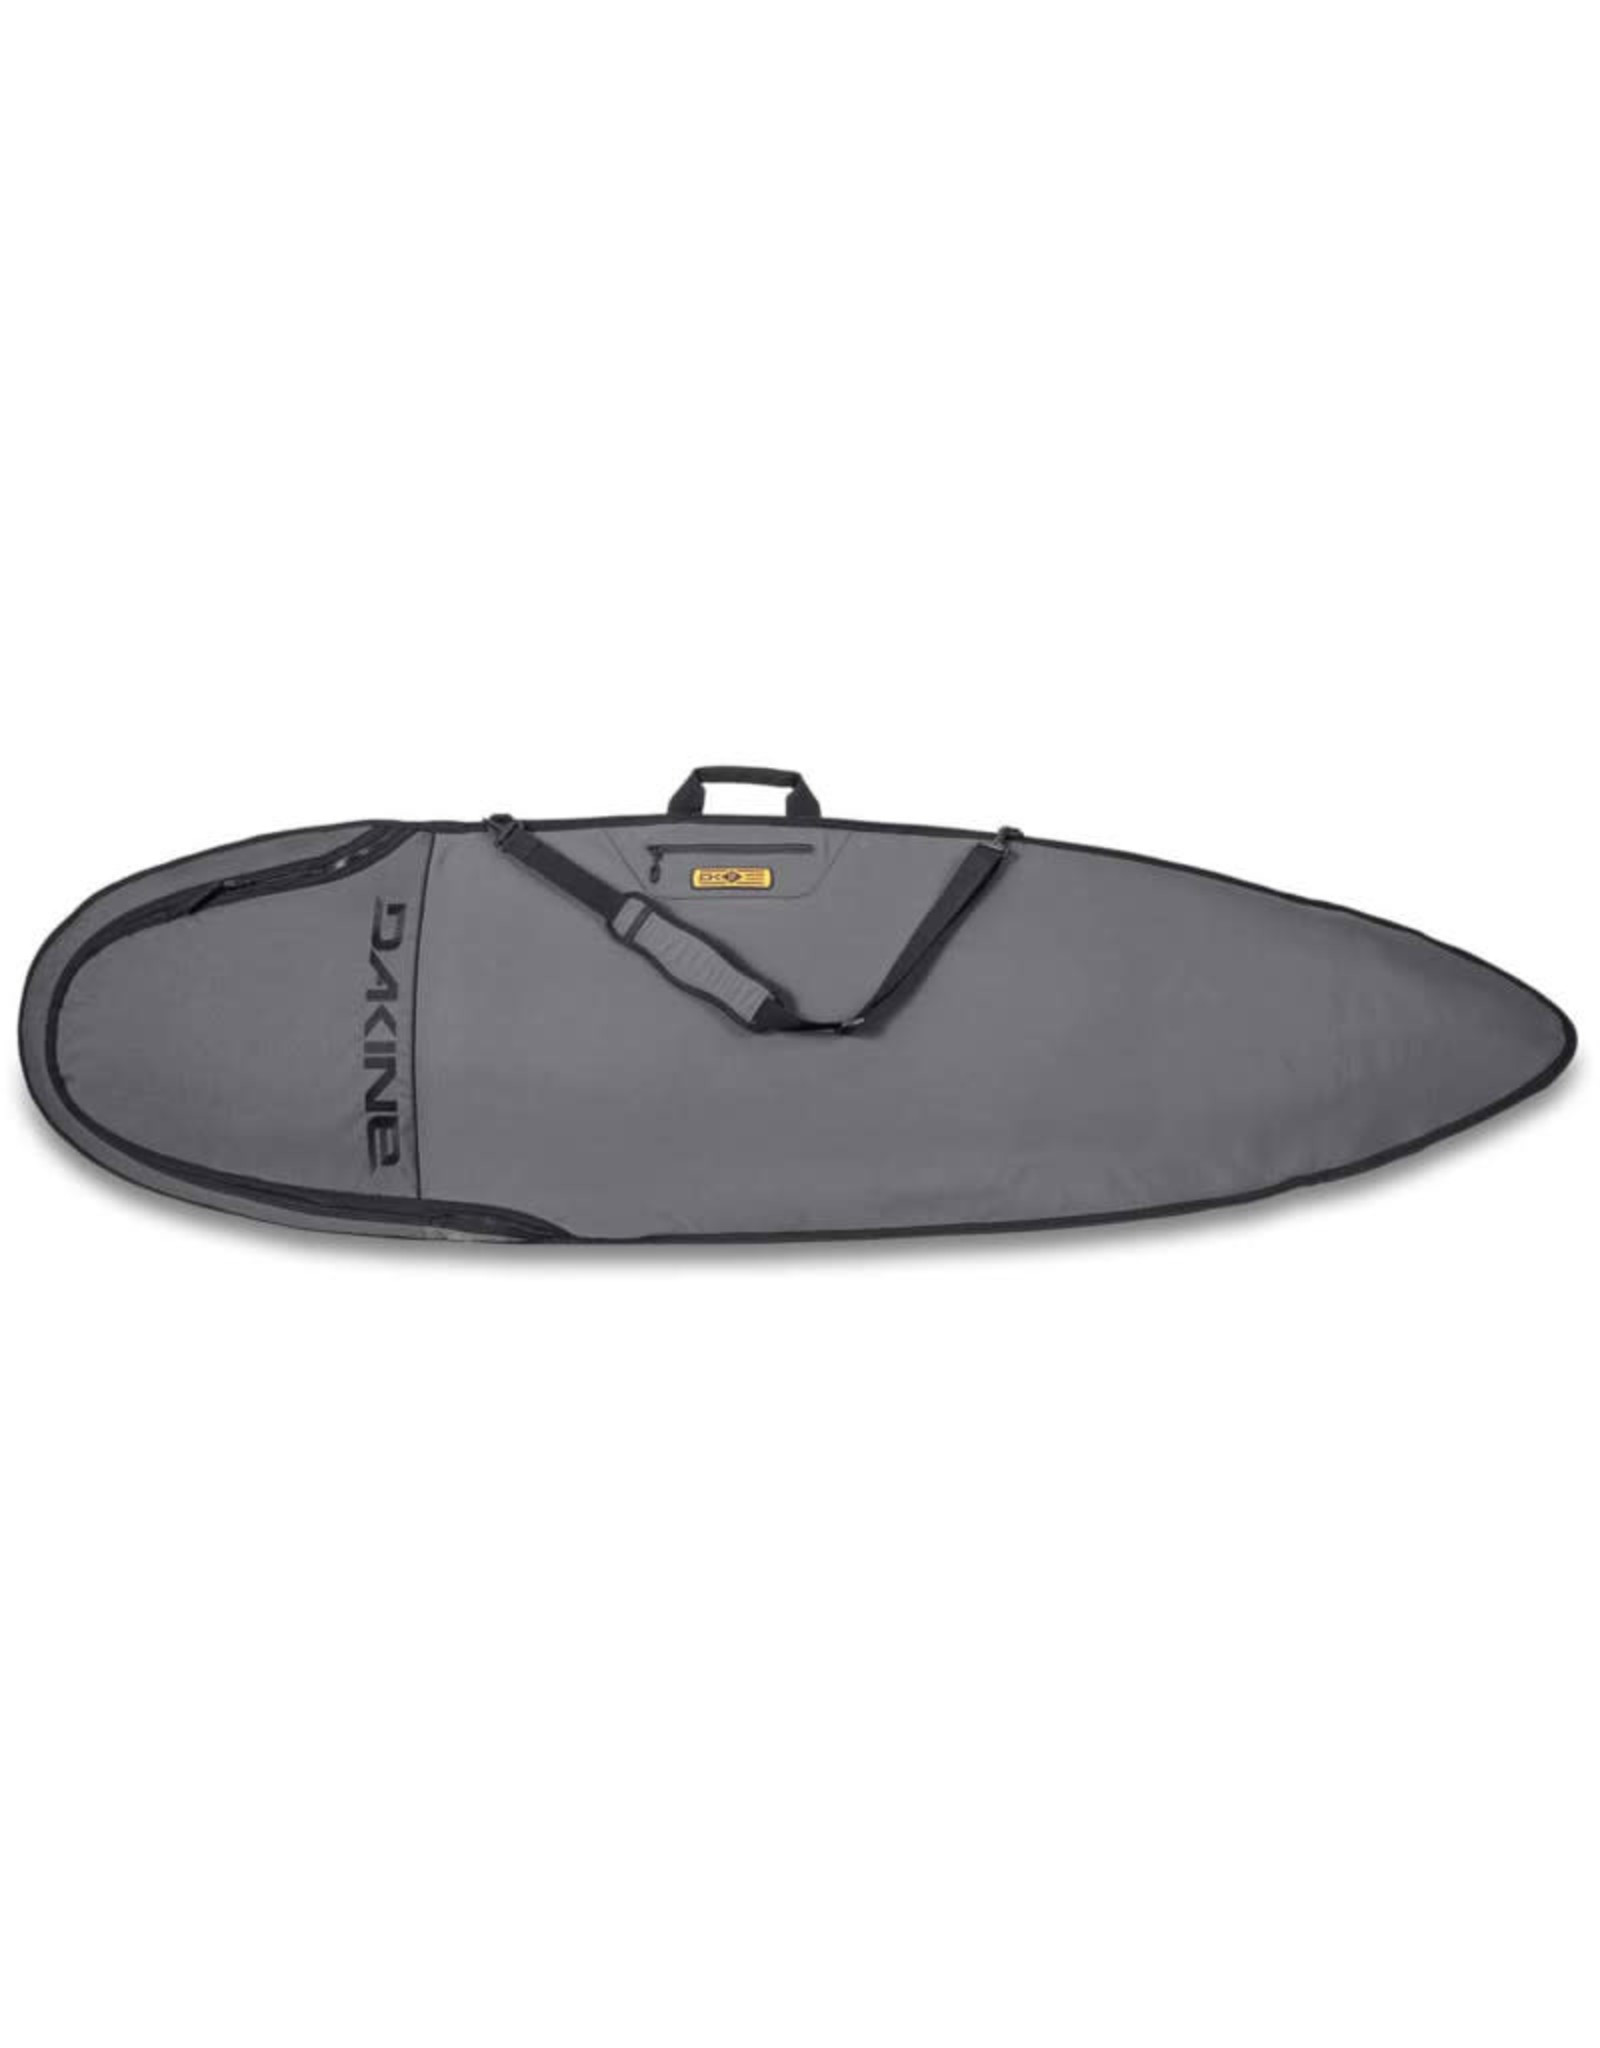 Dakine Dakine 6'0'' John John Florence Mission Surfboard Bag Surf Boardbag Carbon